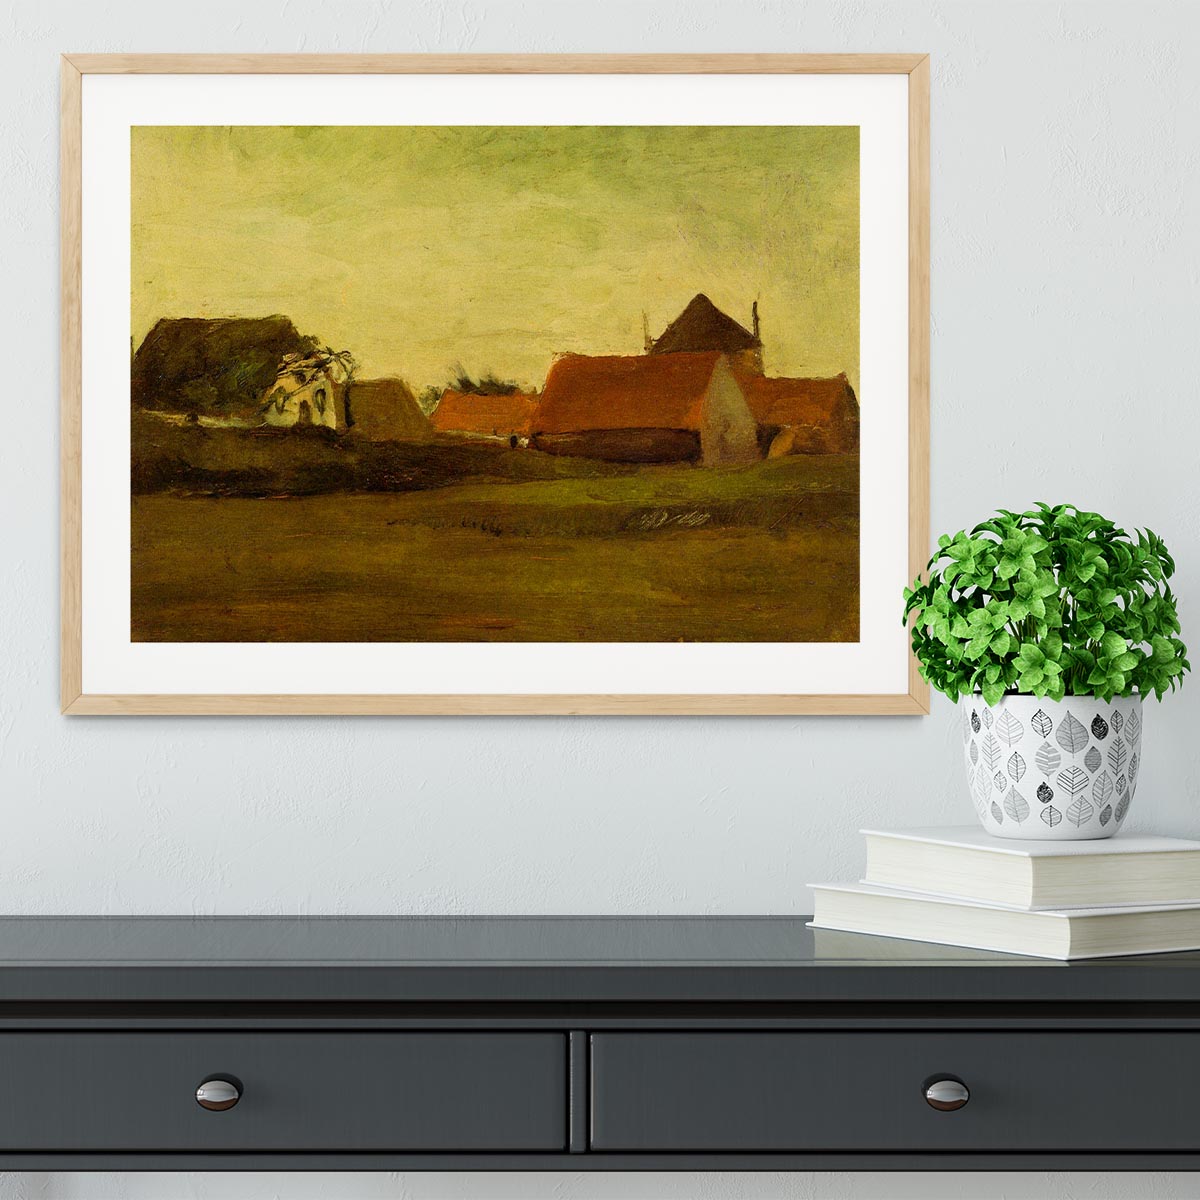 Farmhouses in Loosduinen near The Hague at Twilight by Van Gogh Framed Print - Canvas Art Rocks - 3